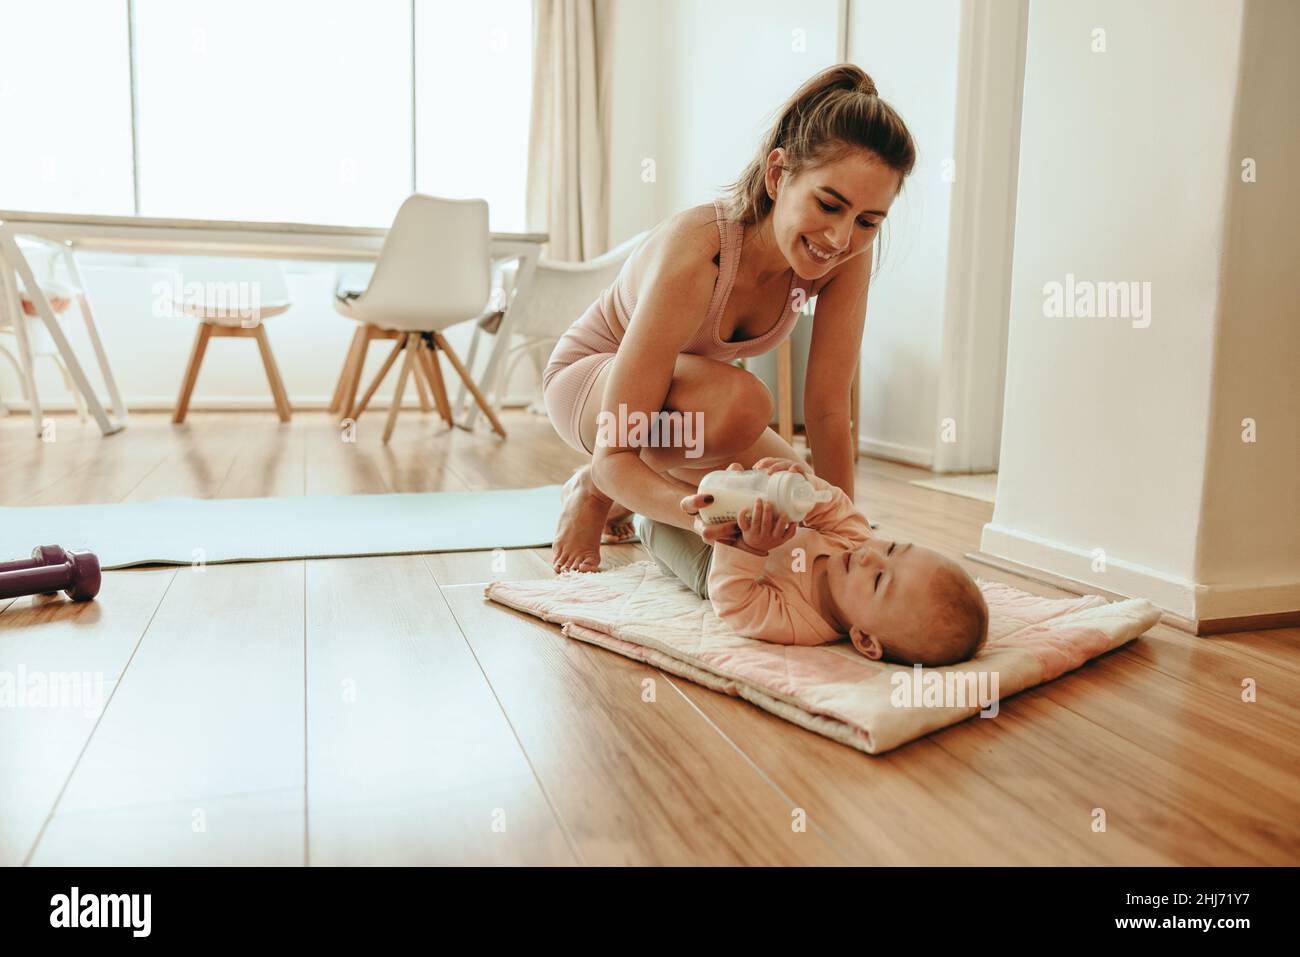 Yogi-Mutter füttert ihr Baby zu Hause mit einer Flasche Milchpulver. Glückliche neue Mutter, die sich um ihr neugeborenes Baby kümmert, während sie eine Pause vom Arbeiten macht. Einzeln Stockfoto